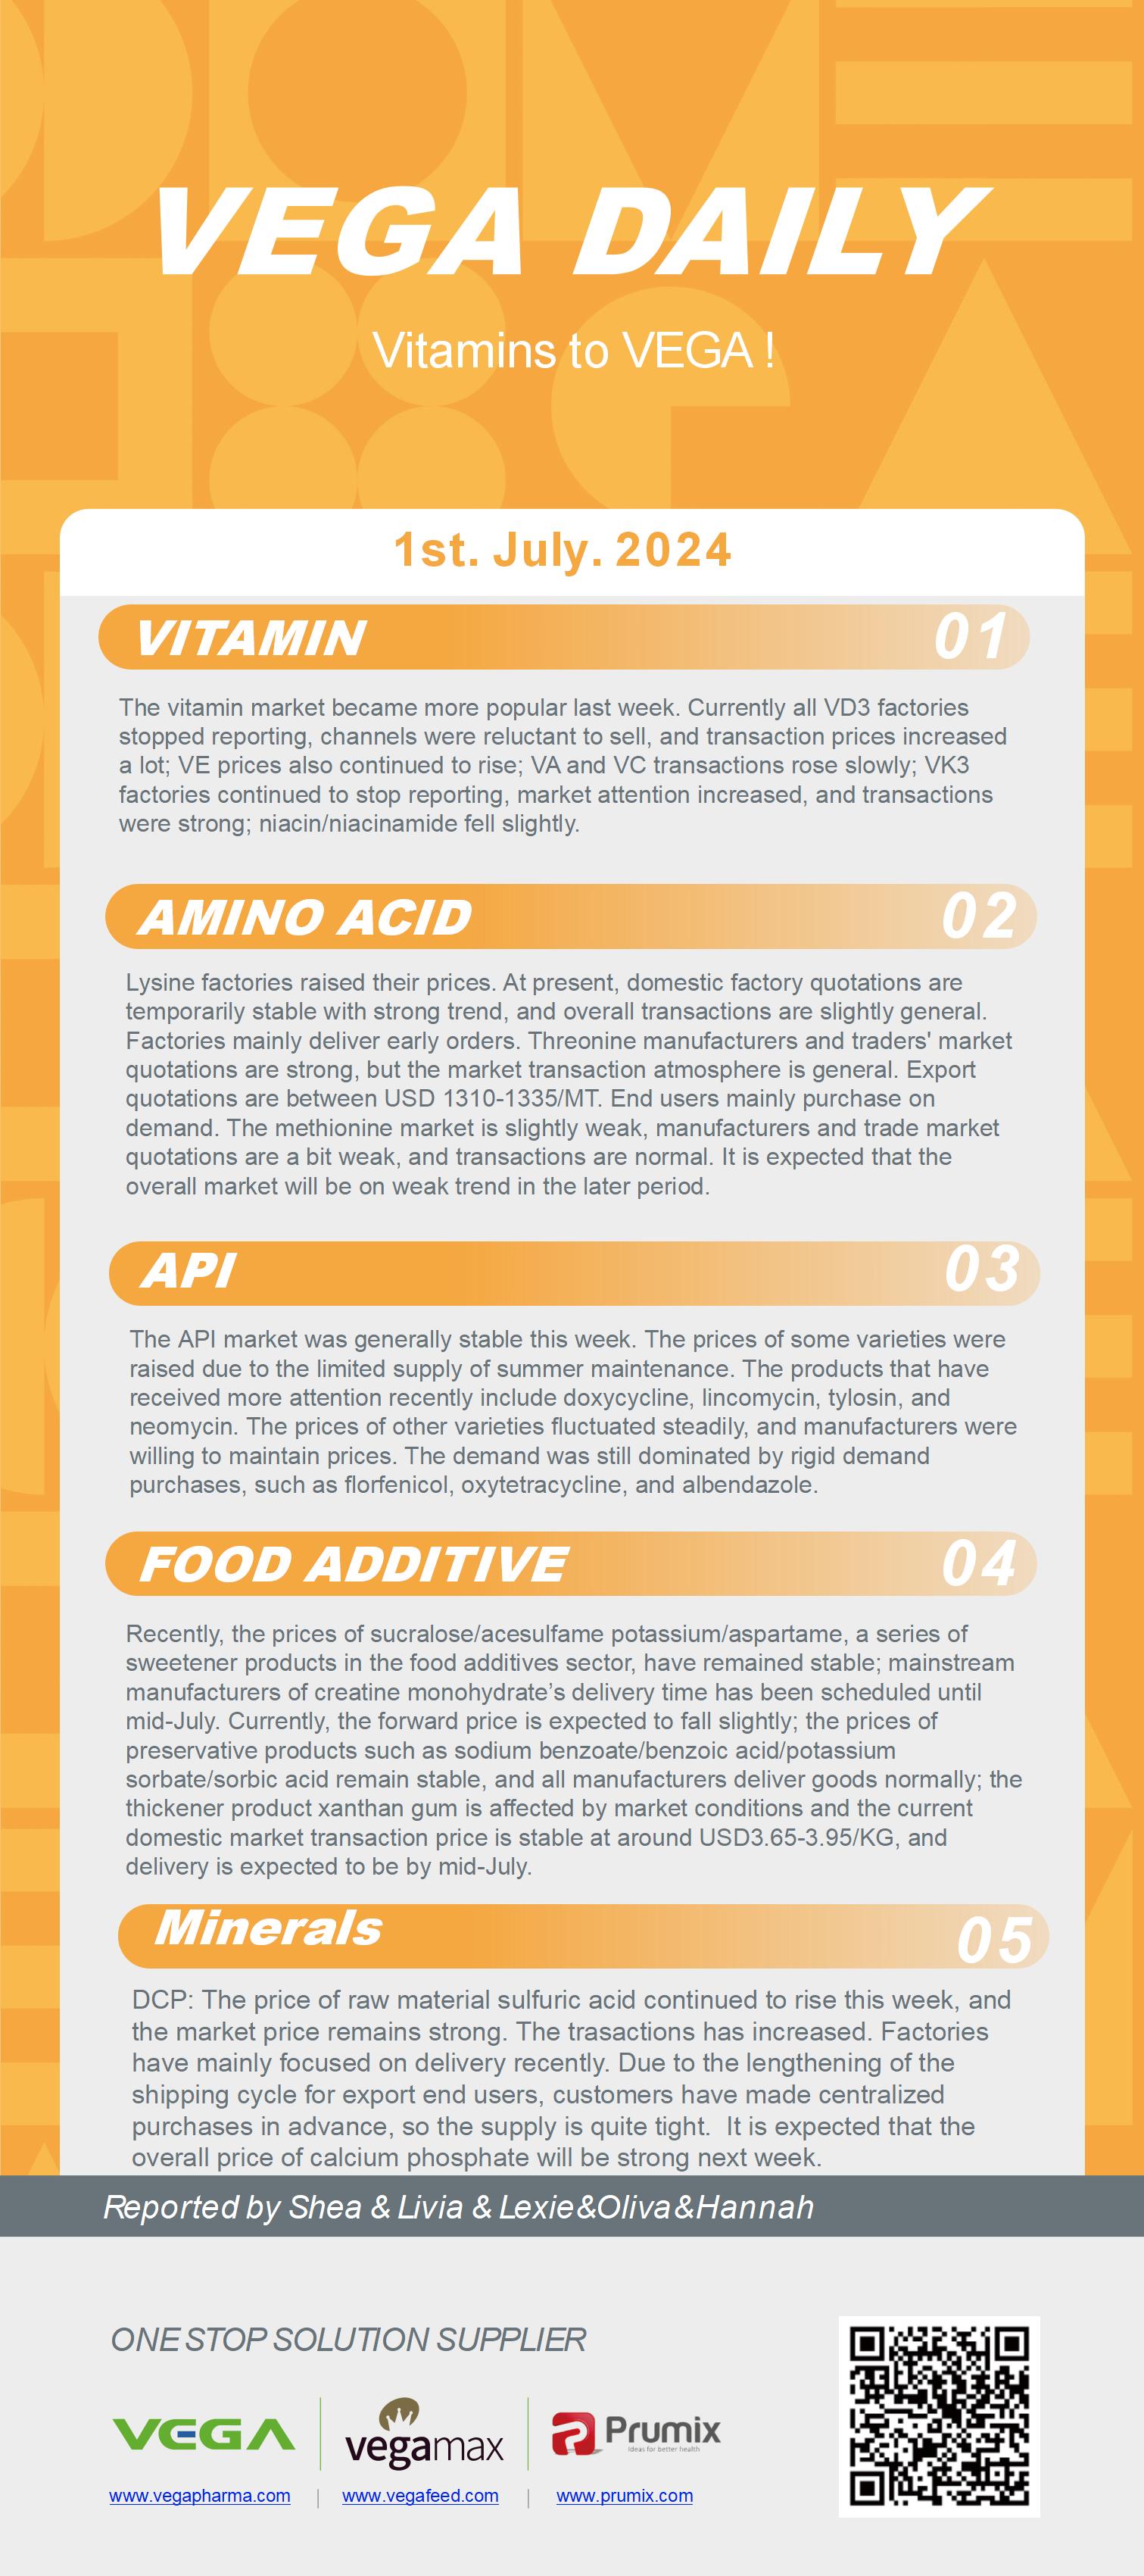 Vega Daily Dated on Jul 1st 2024 Vitamin Amino Acid APl Food Additives.jpg